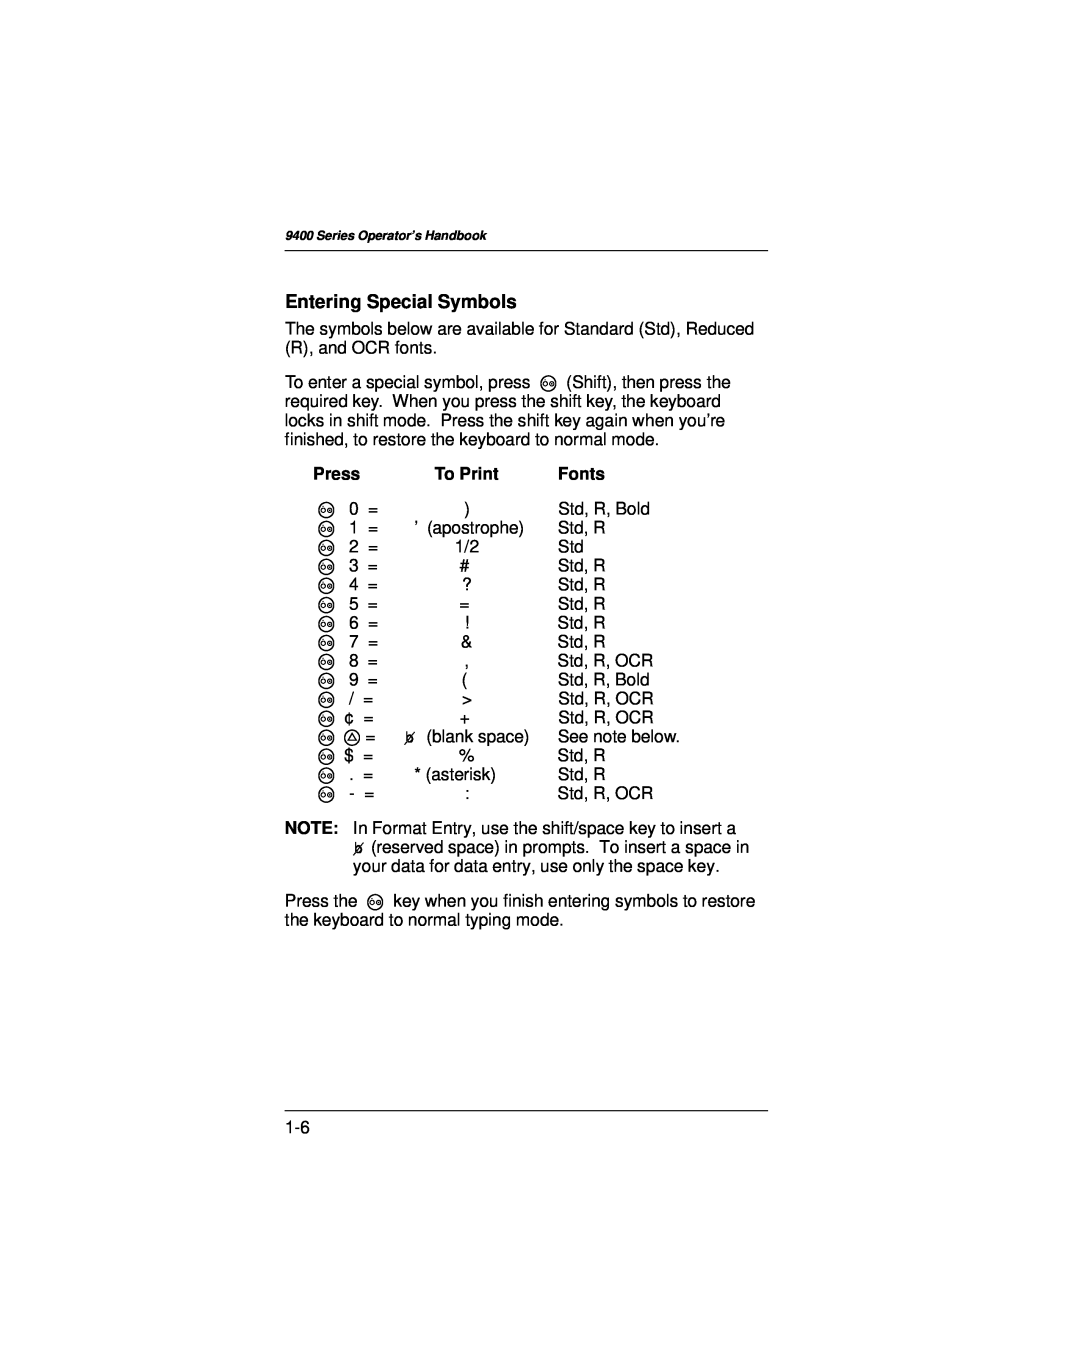 Paxar 9400 manual Entering Special Symbols, Press, Fonts 